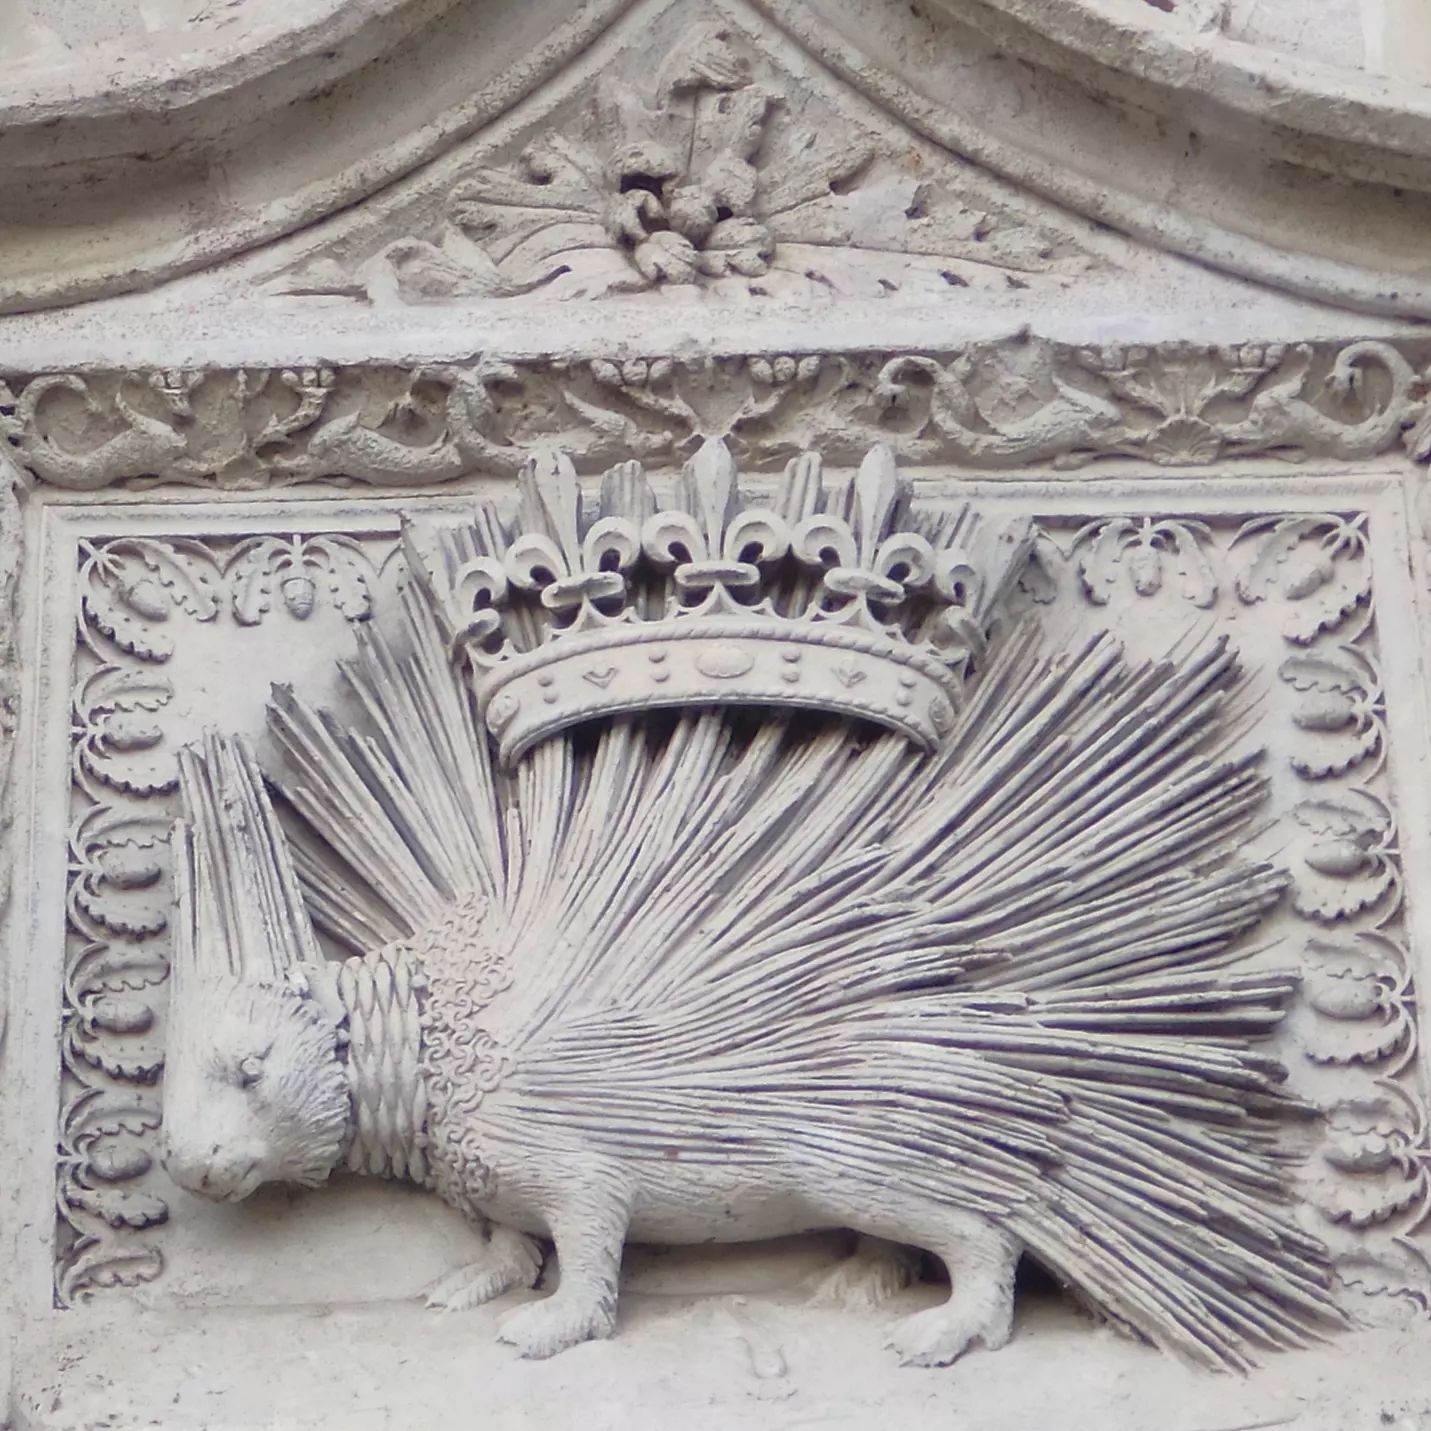 Et voilà la réponse : il s'agit de Blois dont les emblèmes de la ville sont le loup et le porc-épic. 
Mais je suis d'accord que c'était pas évident de trouver le porc-épic sur la photo précédente 😁